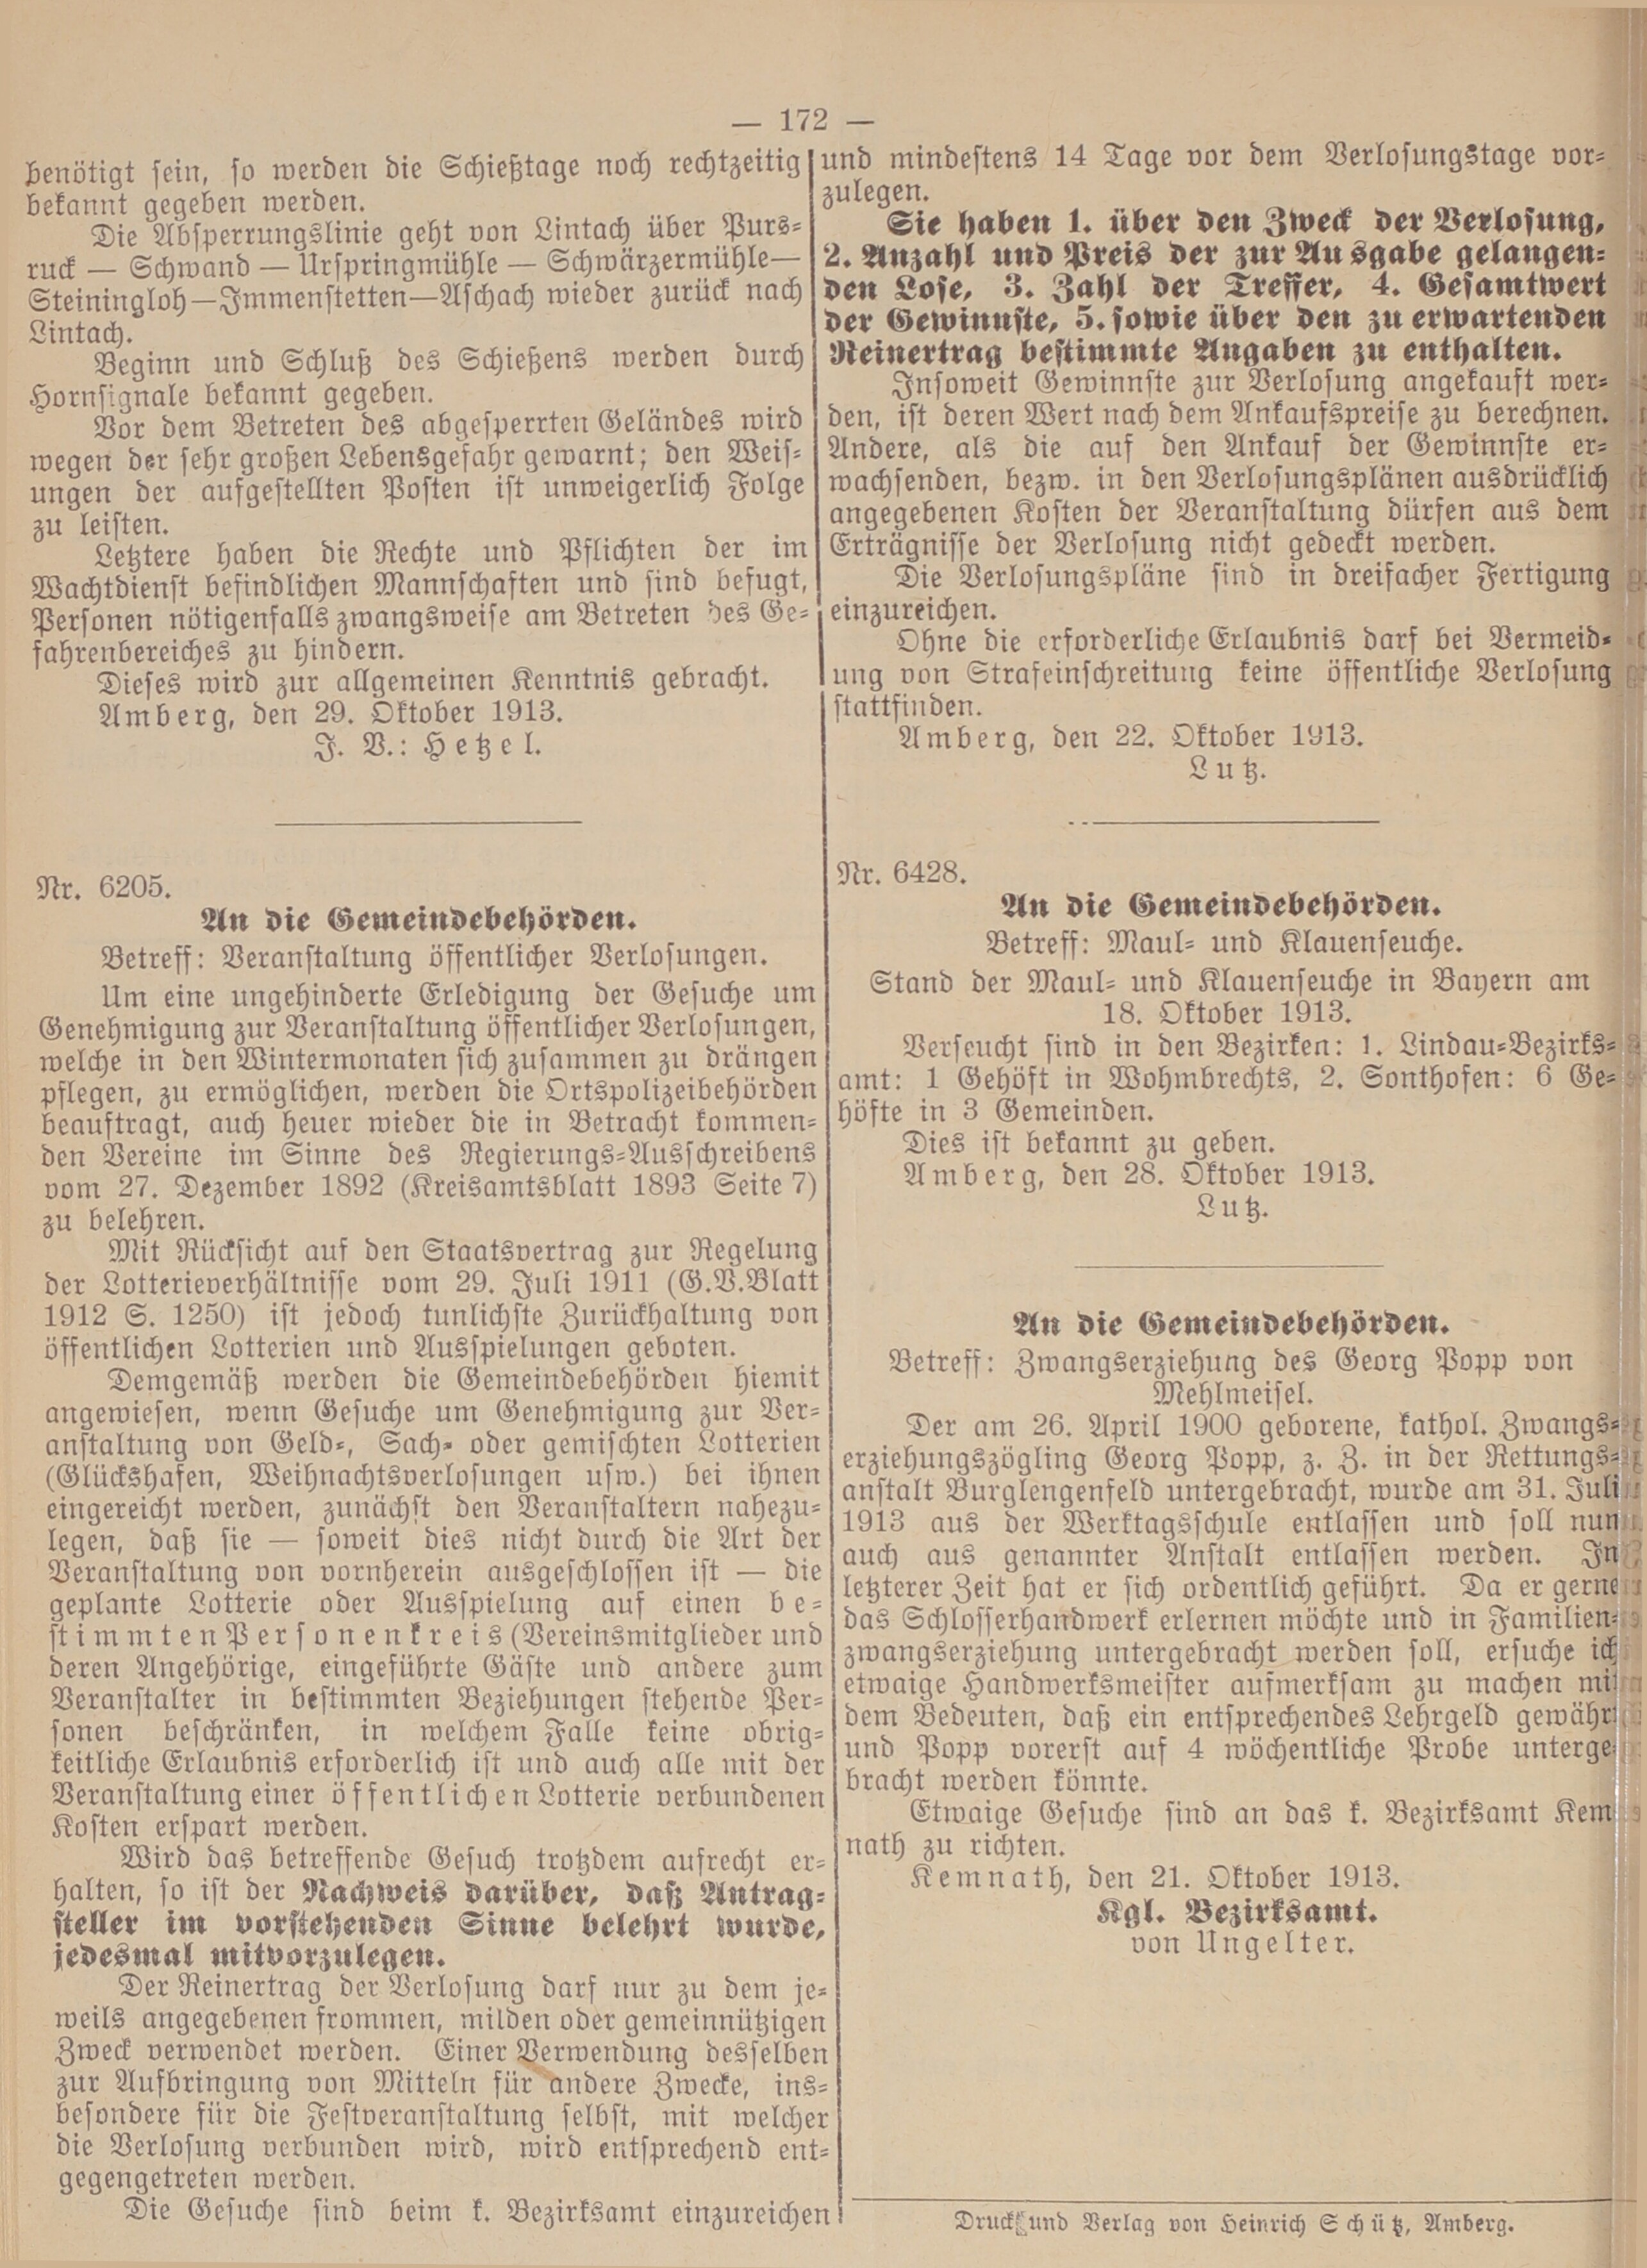 2. amtsblatt-amberg-1913-10-31-n50_6810